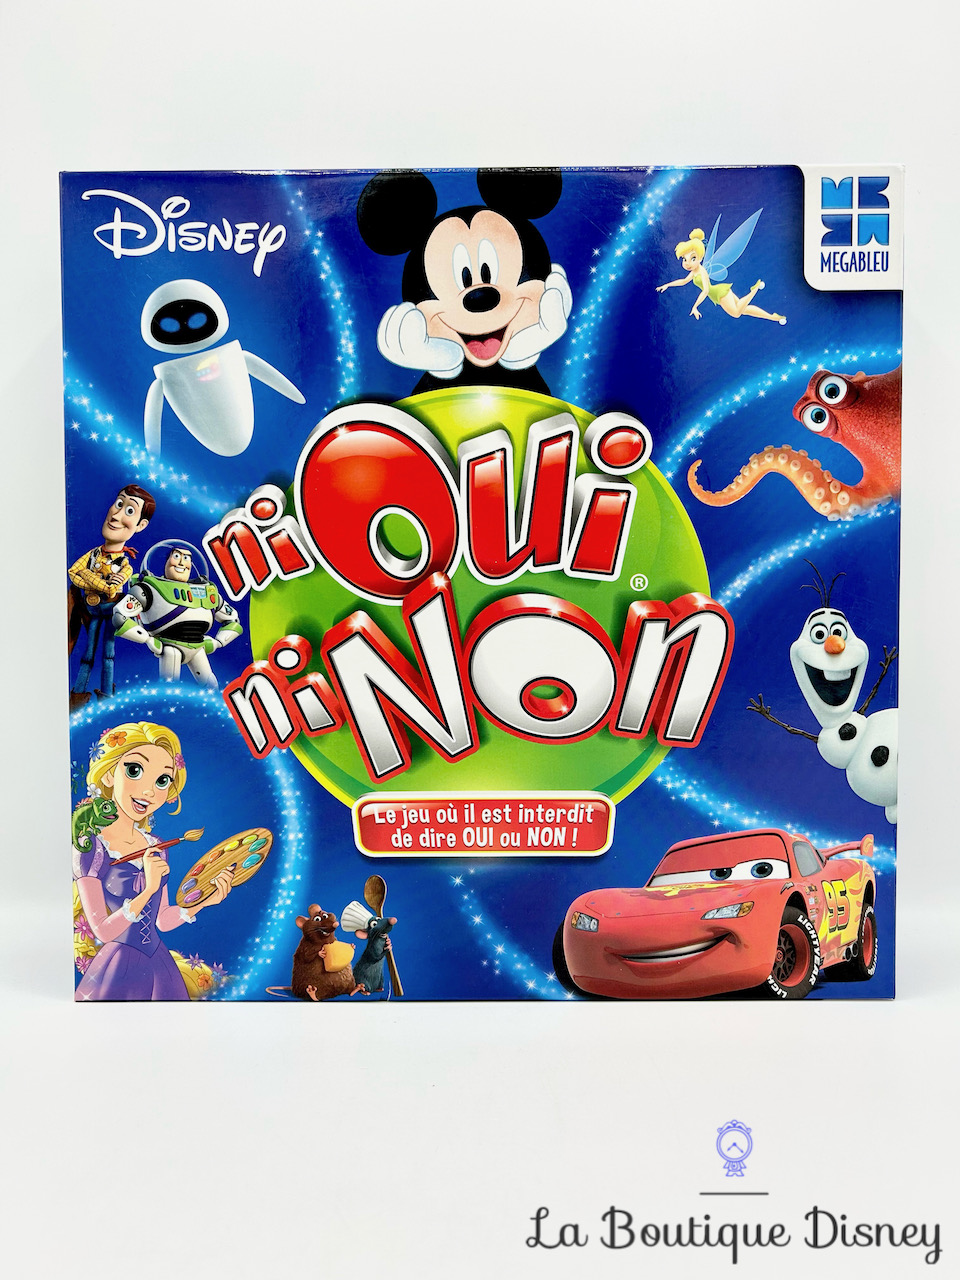 Quizz Disney 500 questions - Jeux d'ambiance